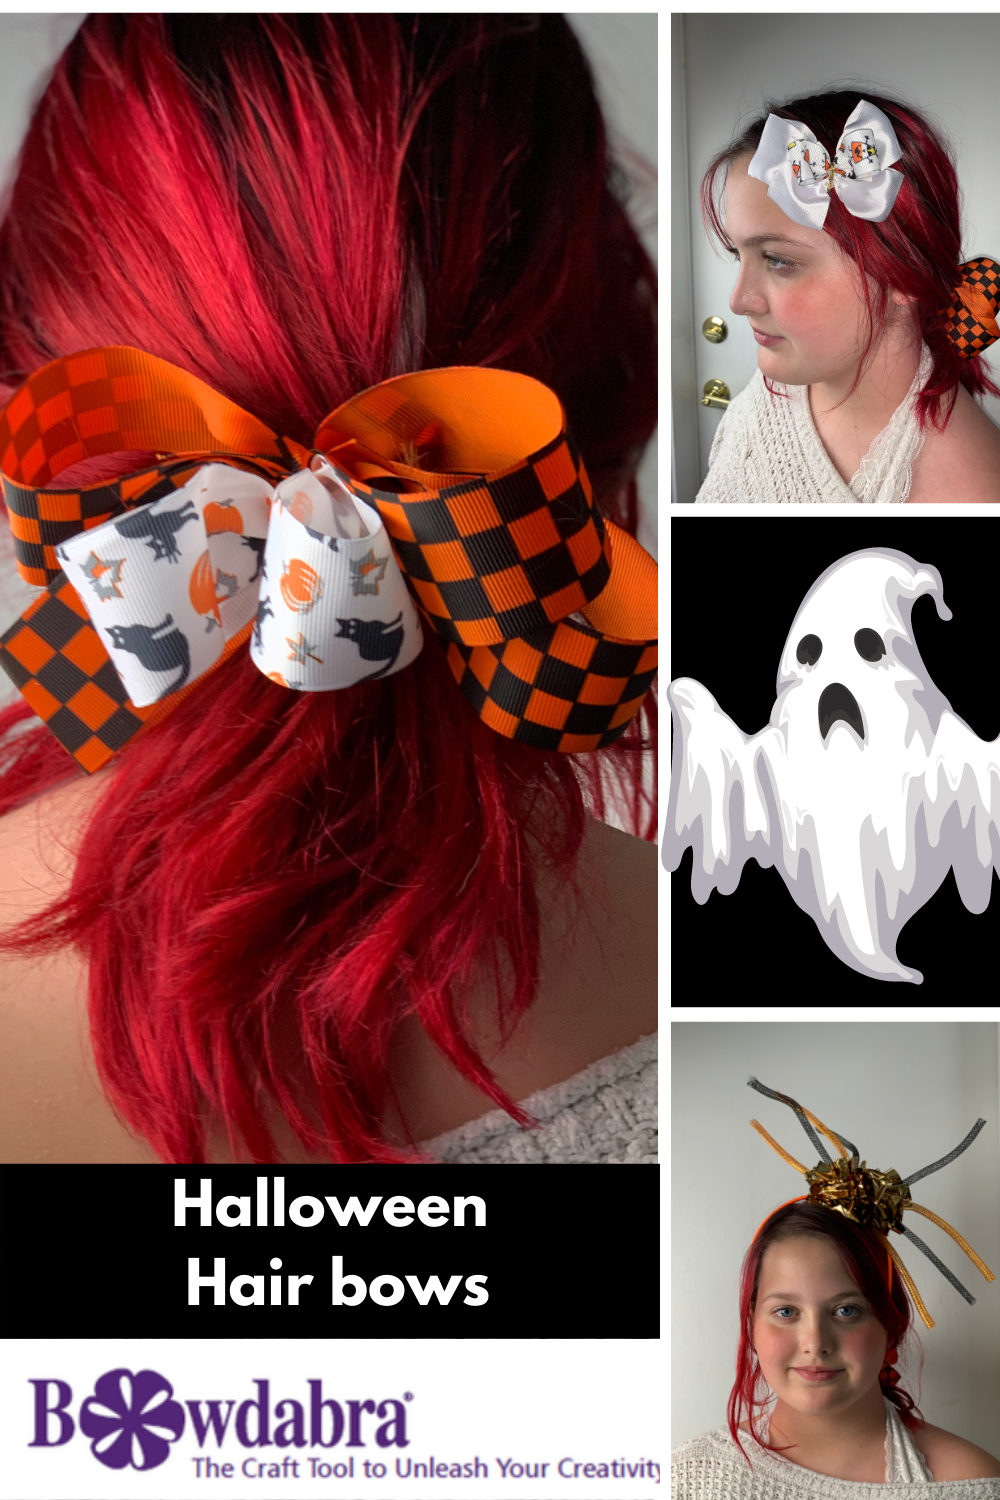 Halloween hair bows